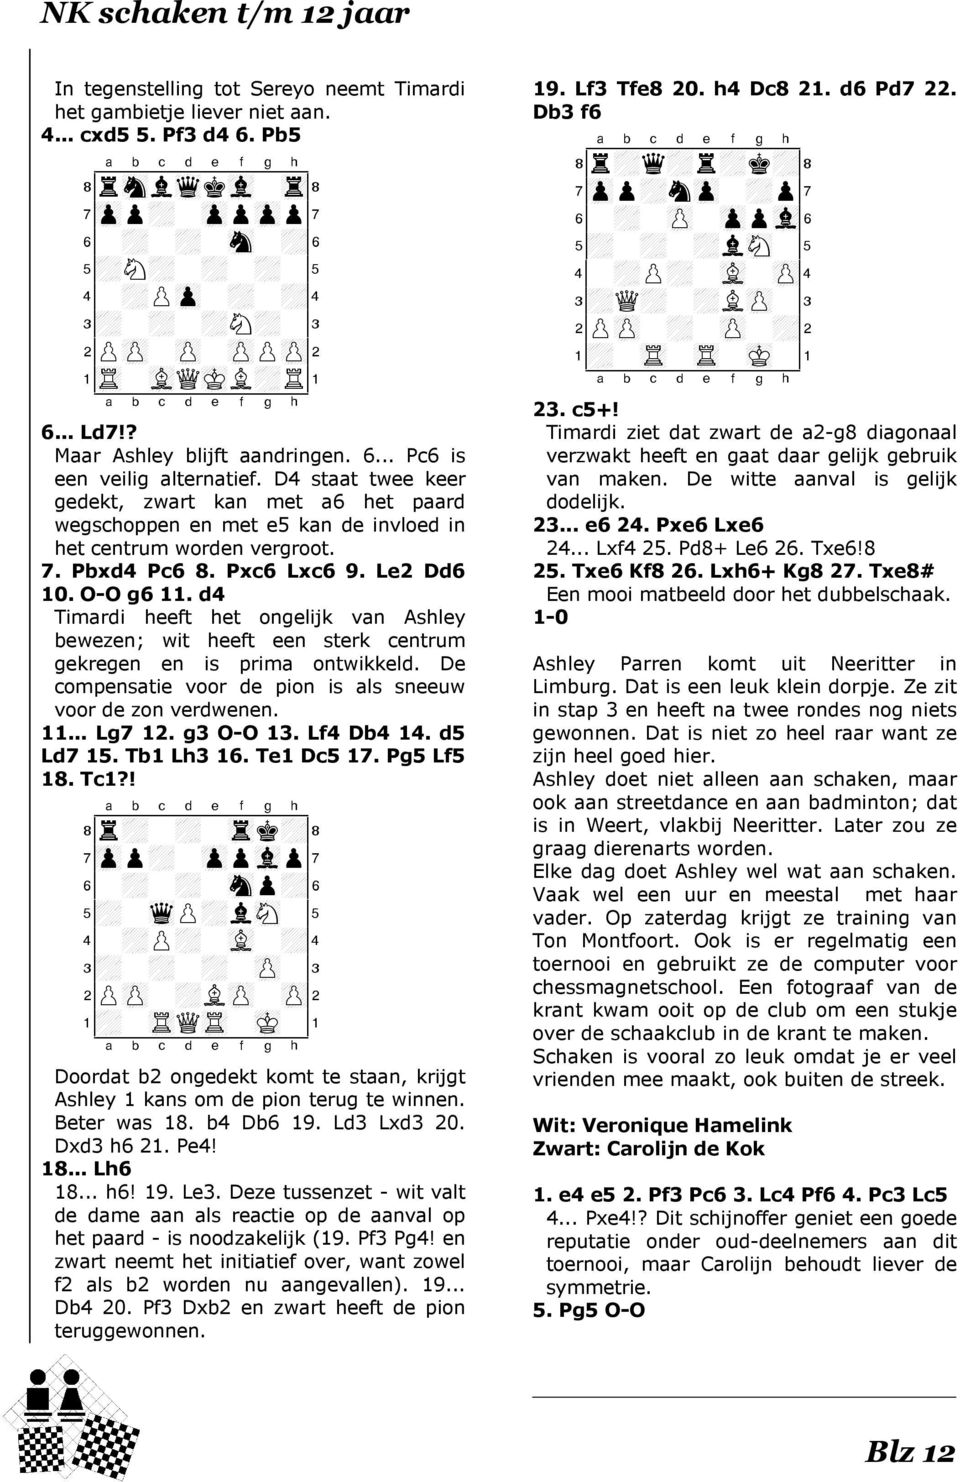 D4 staat twee keer gedekt, zwart kan met a6 het paard wegschoppen en met e5 kan de invloed in het centrum worden vergroot. 7. Pbxd4 Pc6 8. Pxc6 Lxc6 9. Le2 Dd6 10. O-O g6 11.